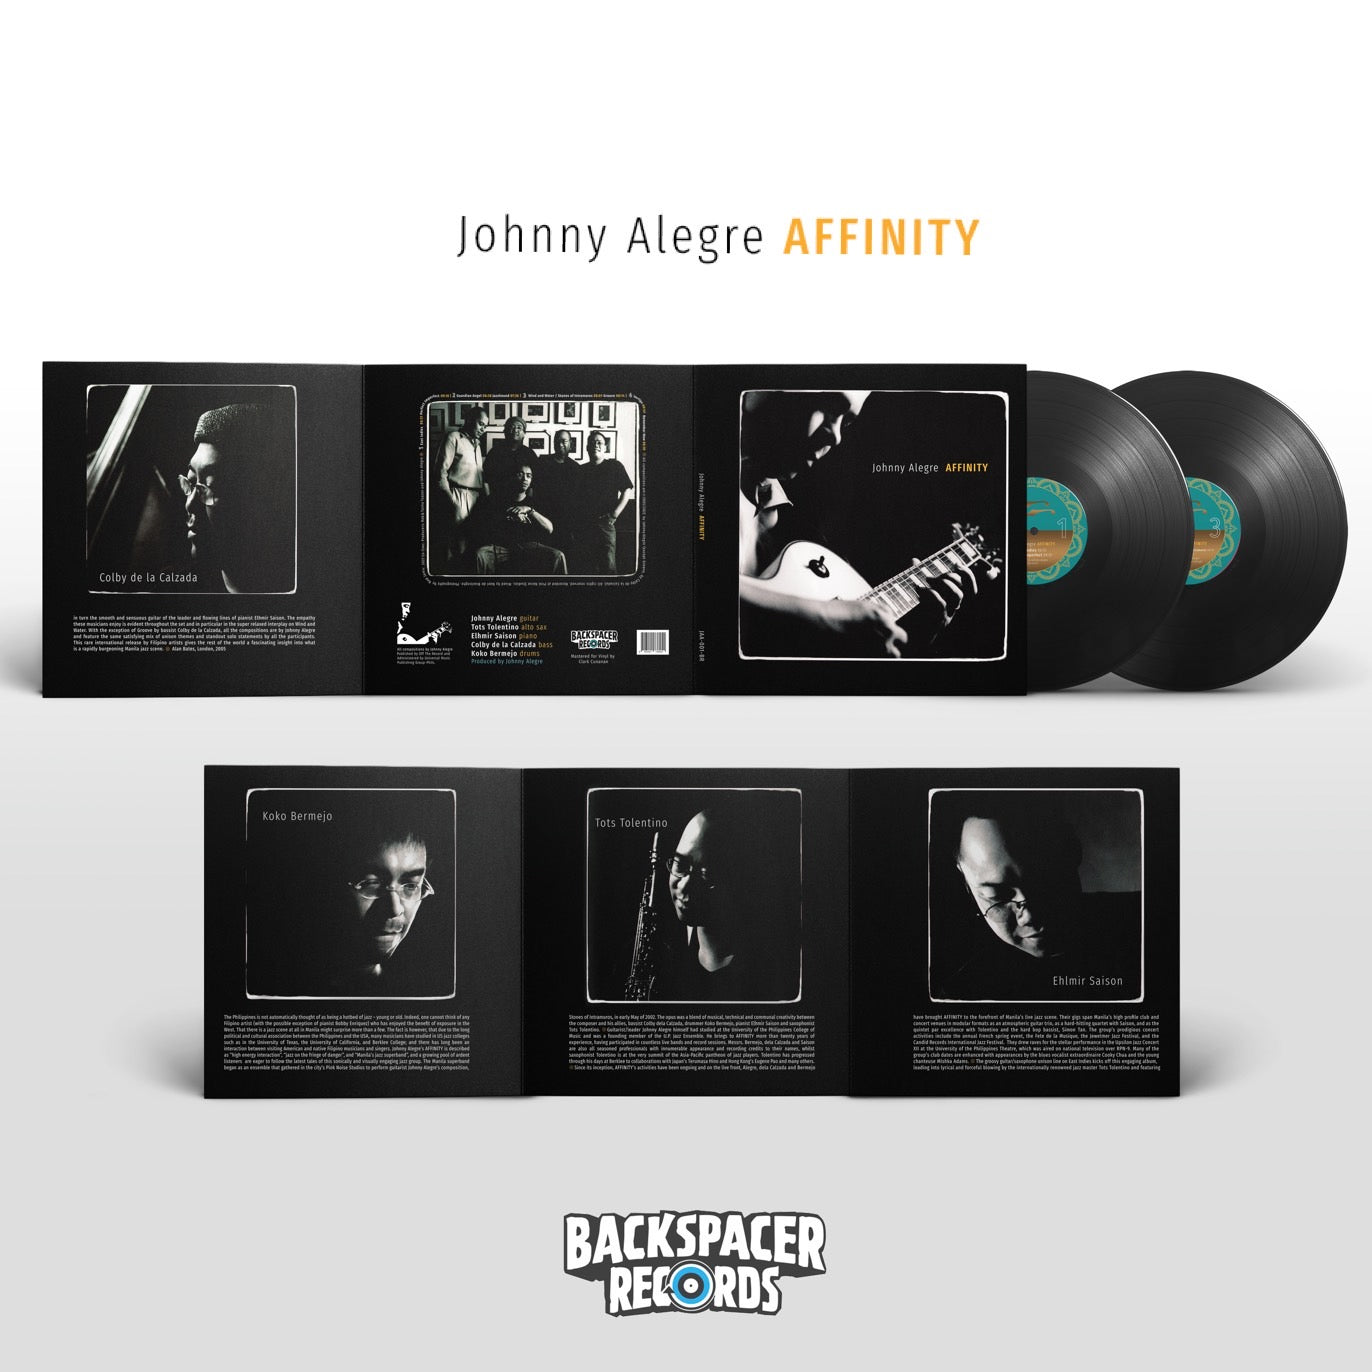 Johnny Alegre AFFINITY - Johnny Alegre AFFINITY 2-LP (Backspacer Records)